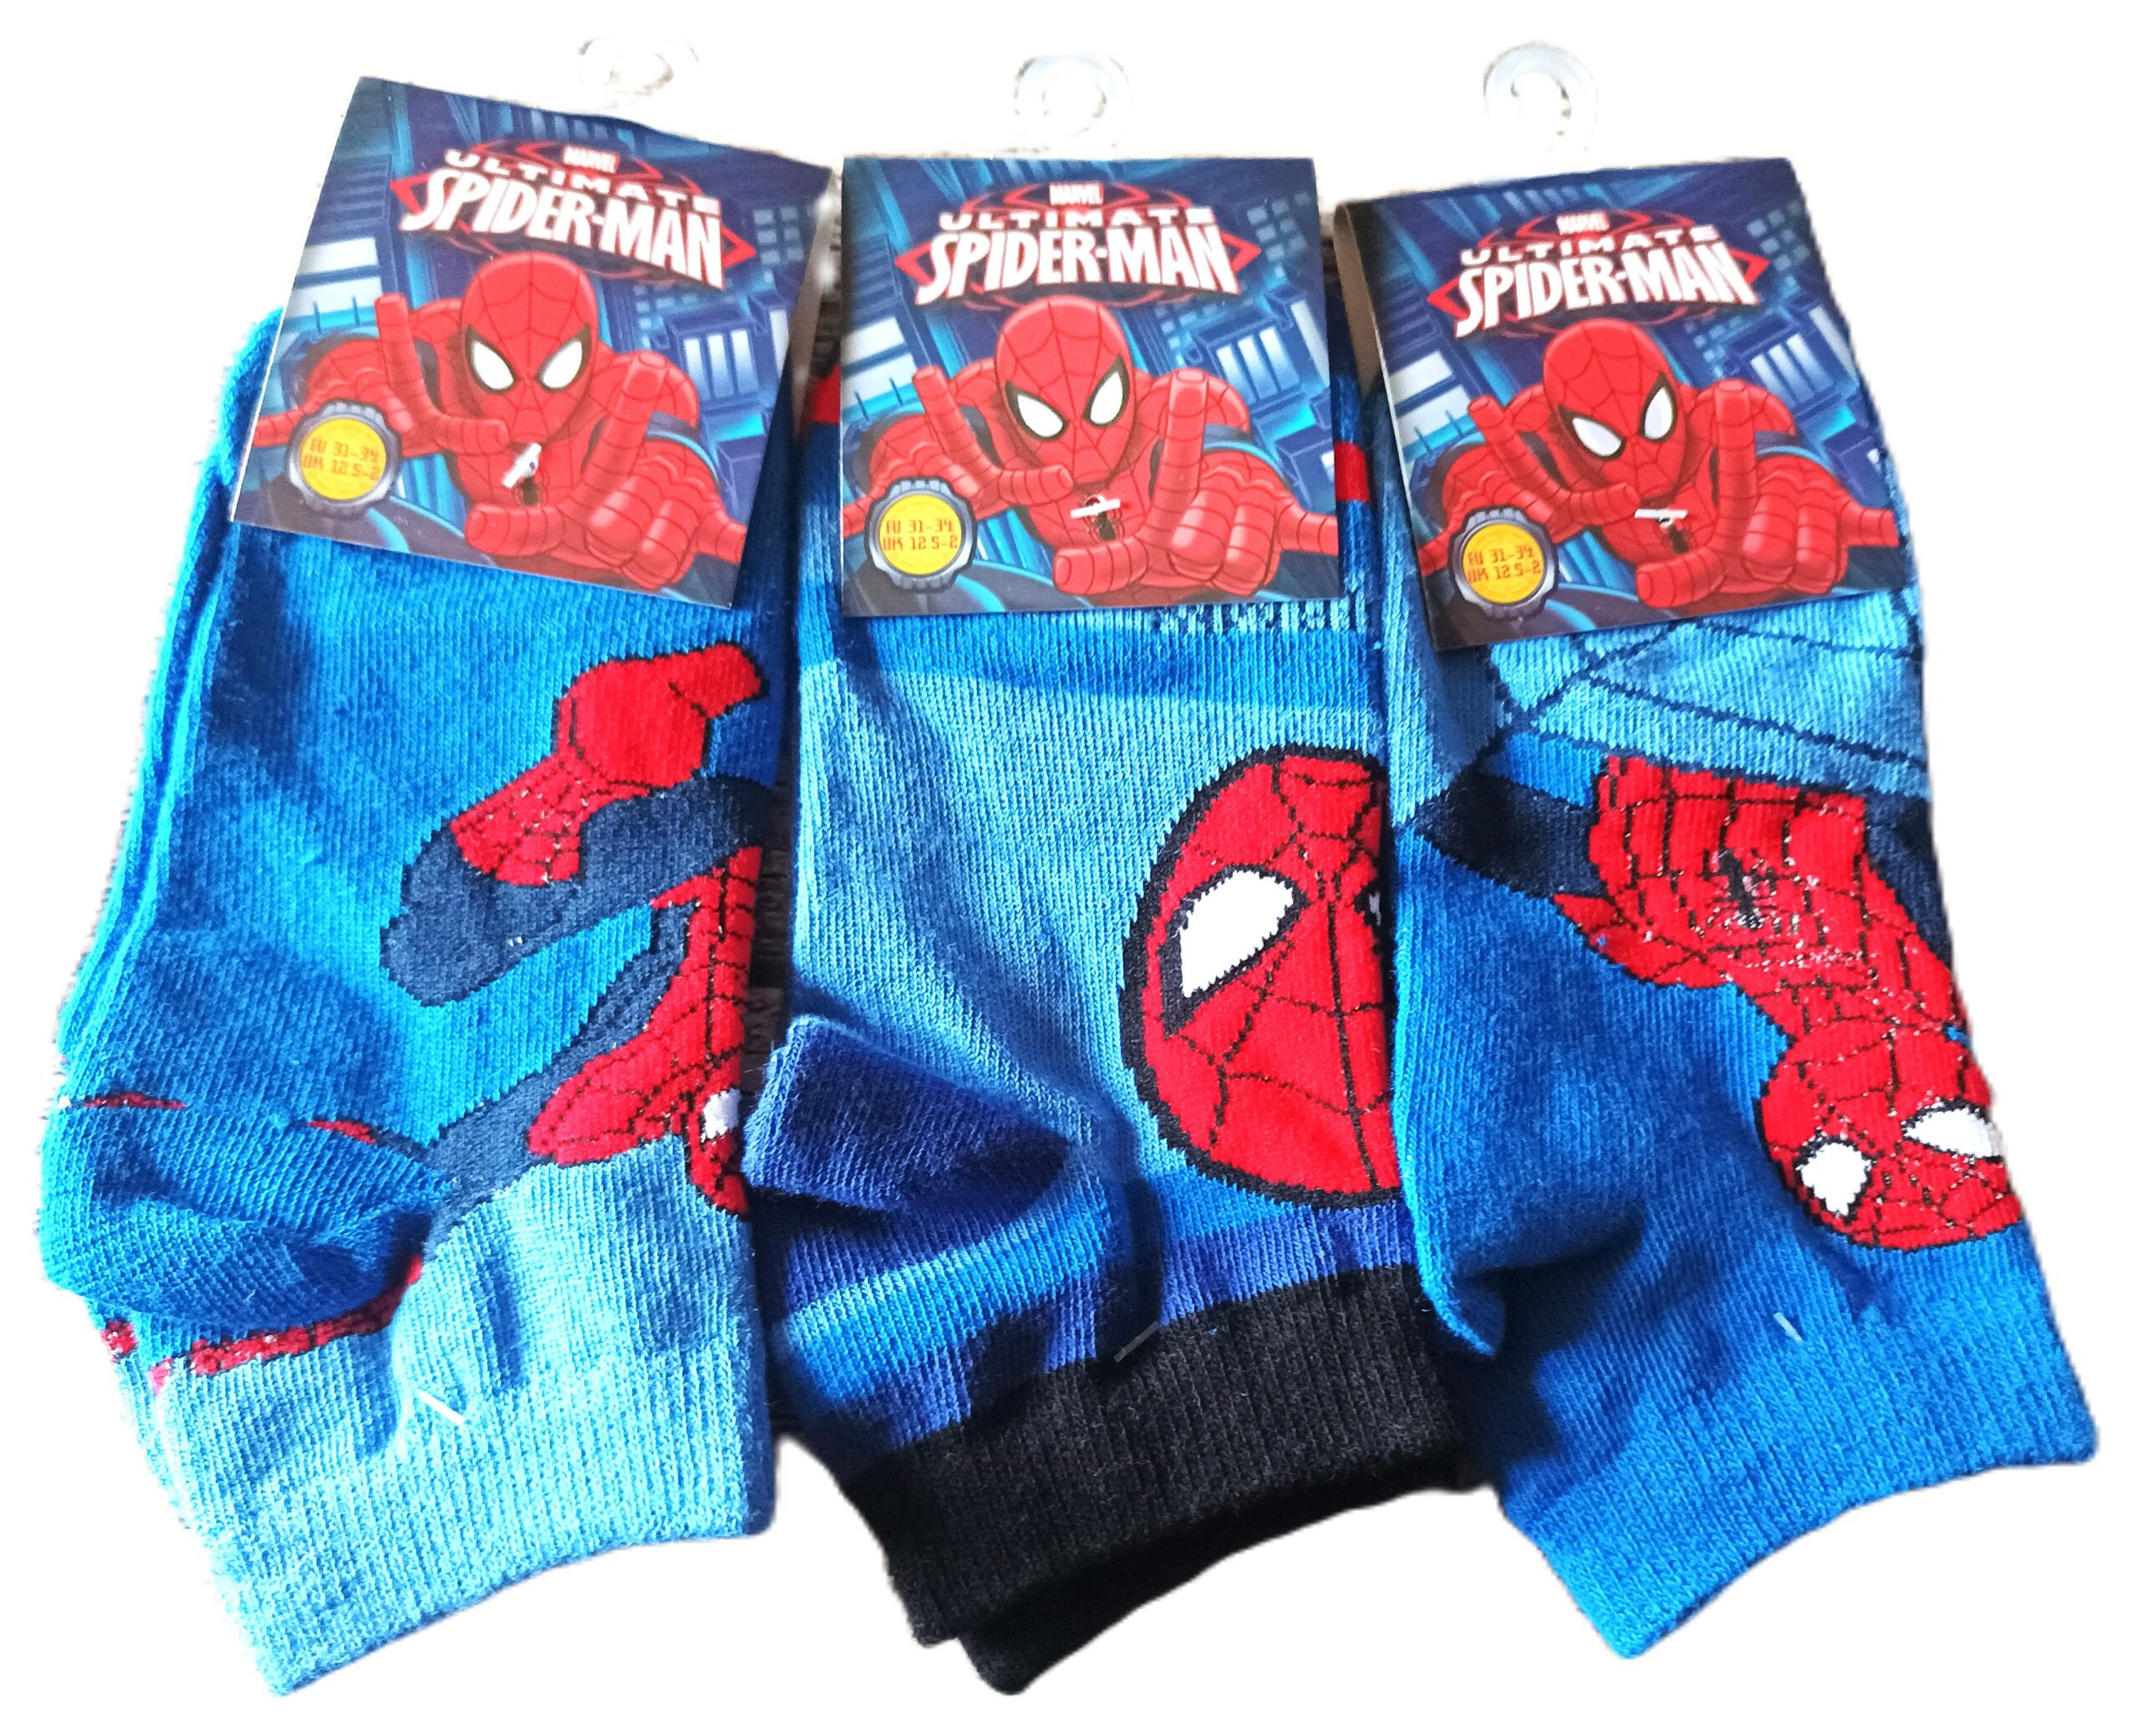 Chaussettes Socquettes Spiderman Marvel garçon lot de 3 paires 31/34